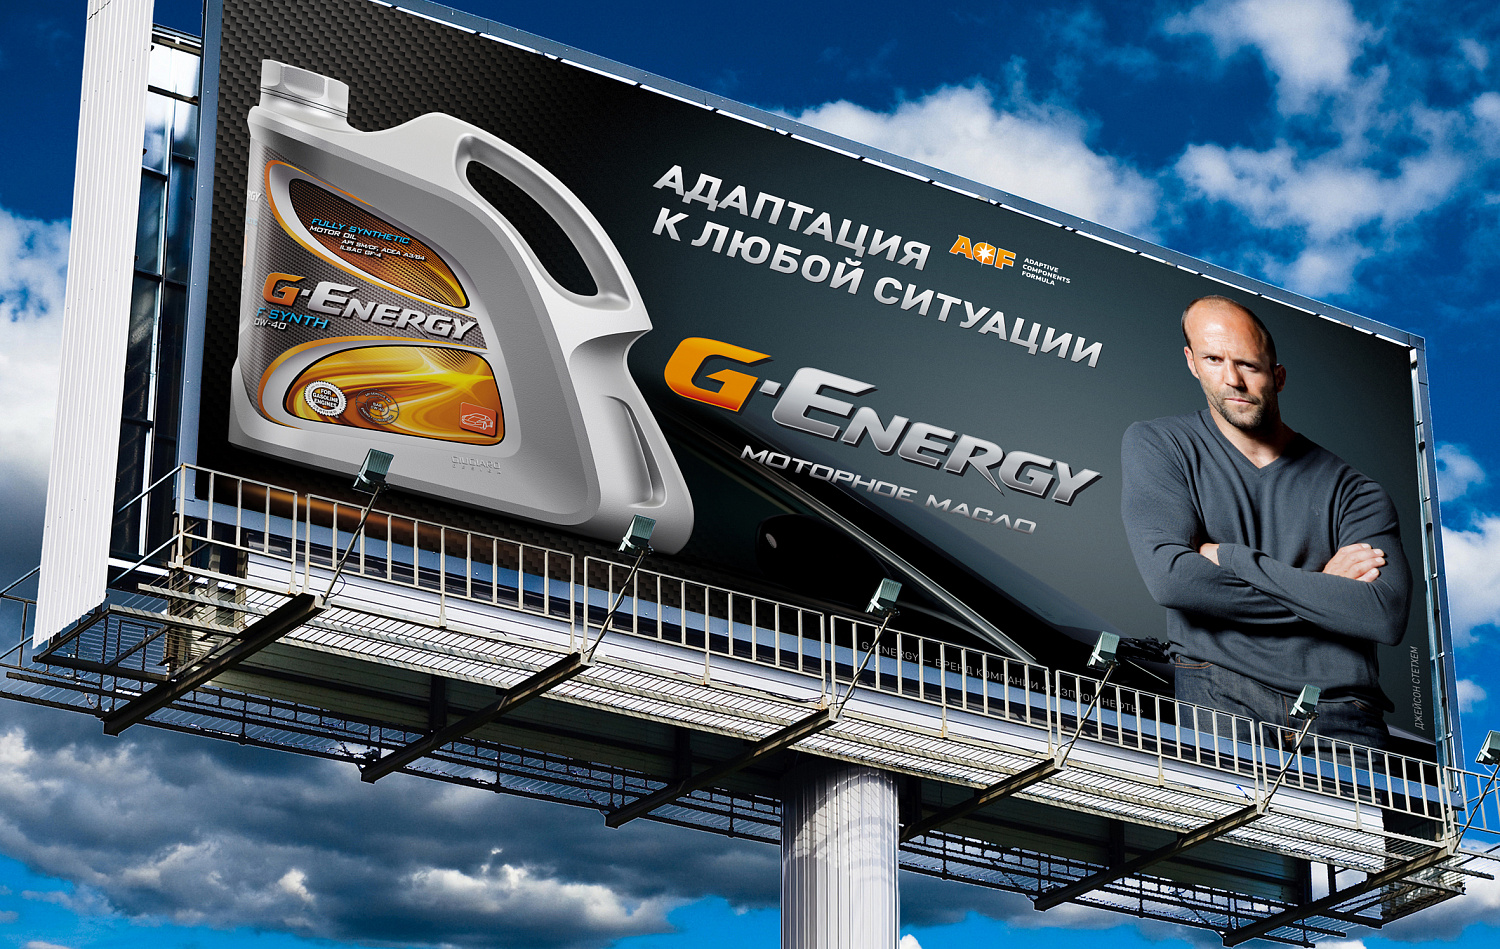 Печатная и наружная реклама G-Energy 2011 - Портфолио Depot